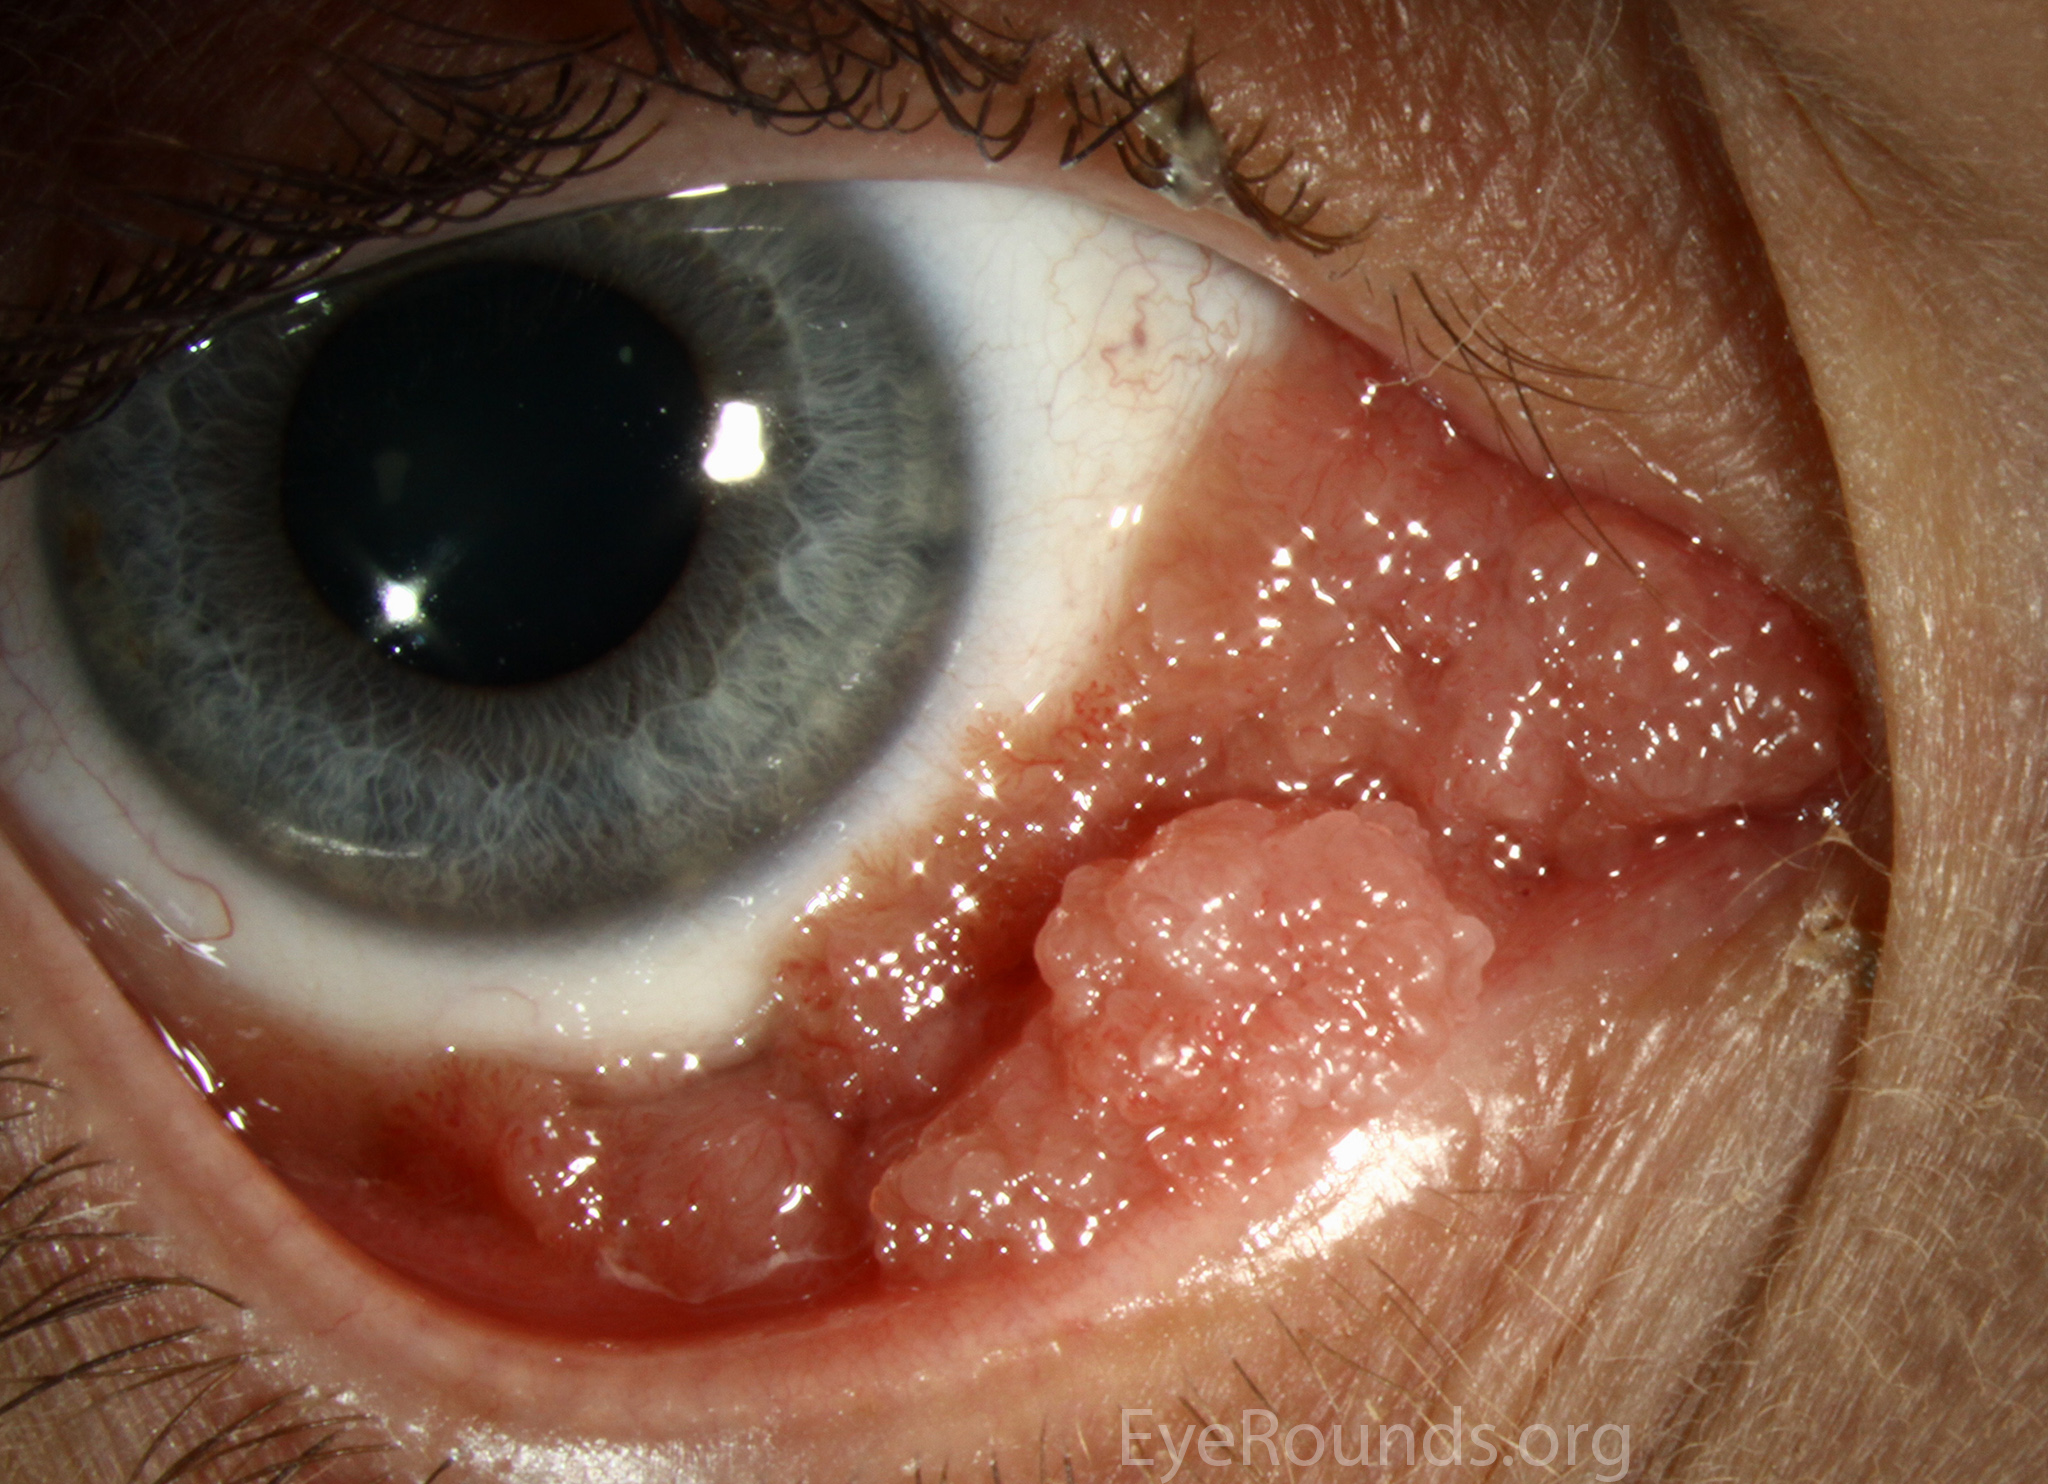 hpv papilloma eyelid